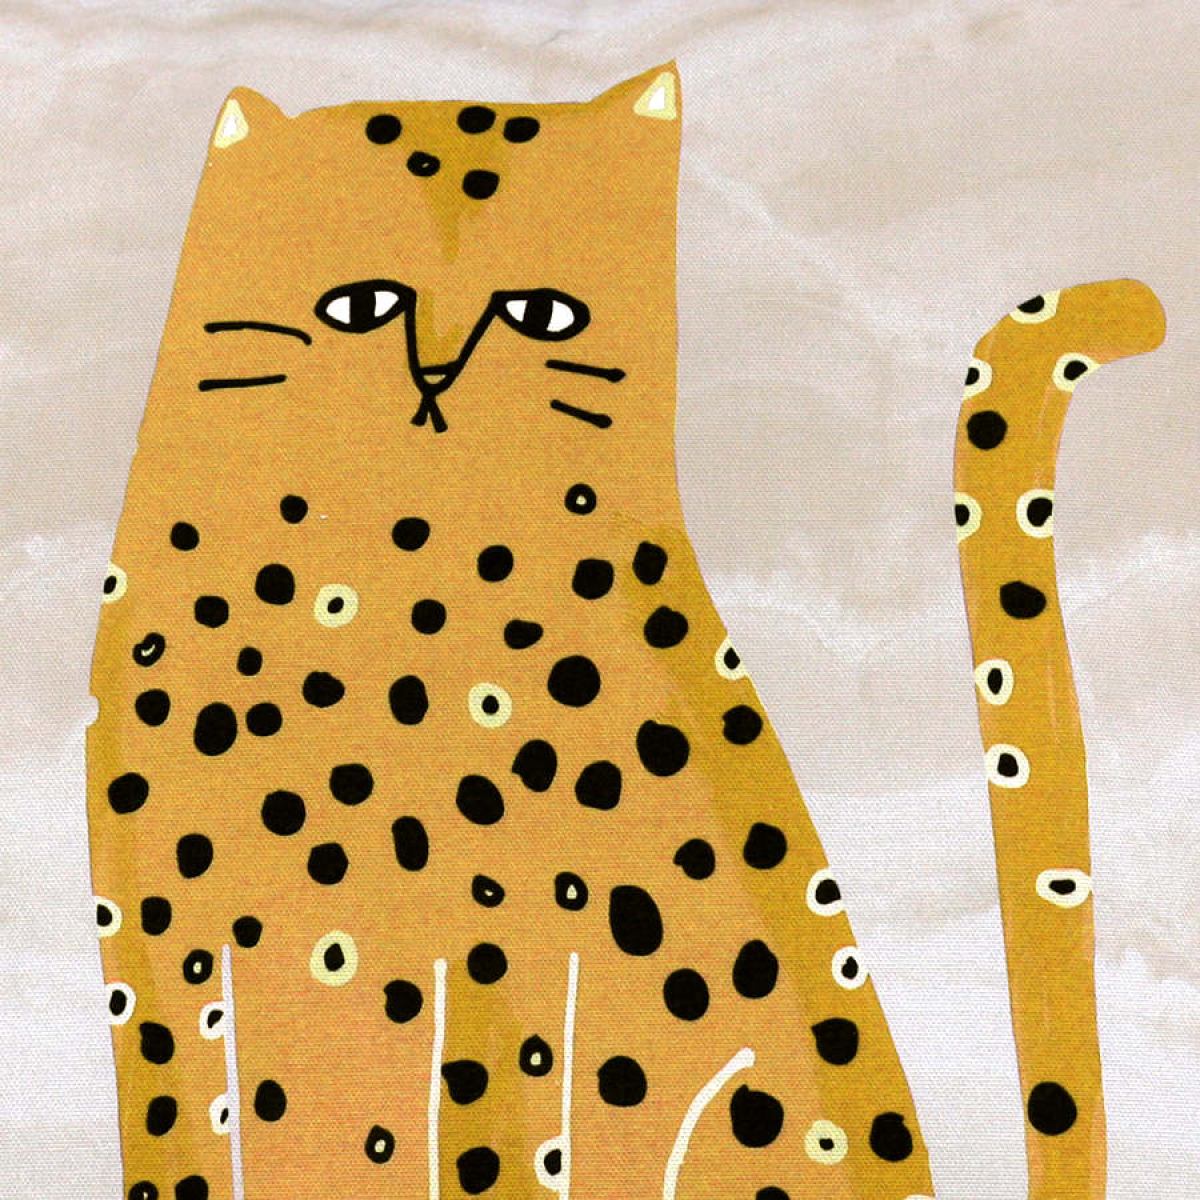 Handgefertigtes Sofakissen mit einem Katzen-Motiv als Druck auf Baumwolle (45 x 45 cm)